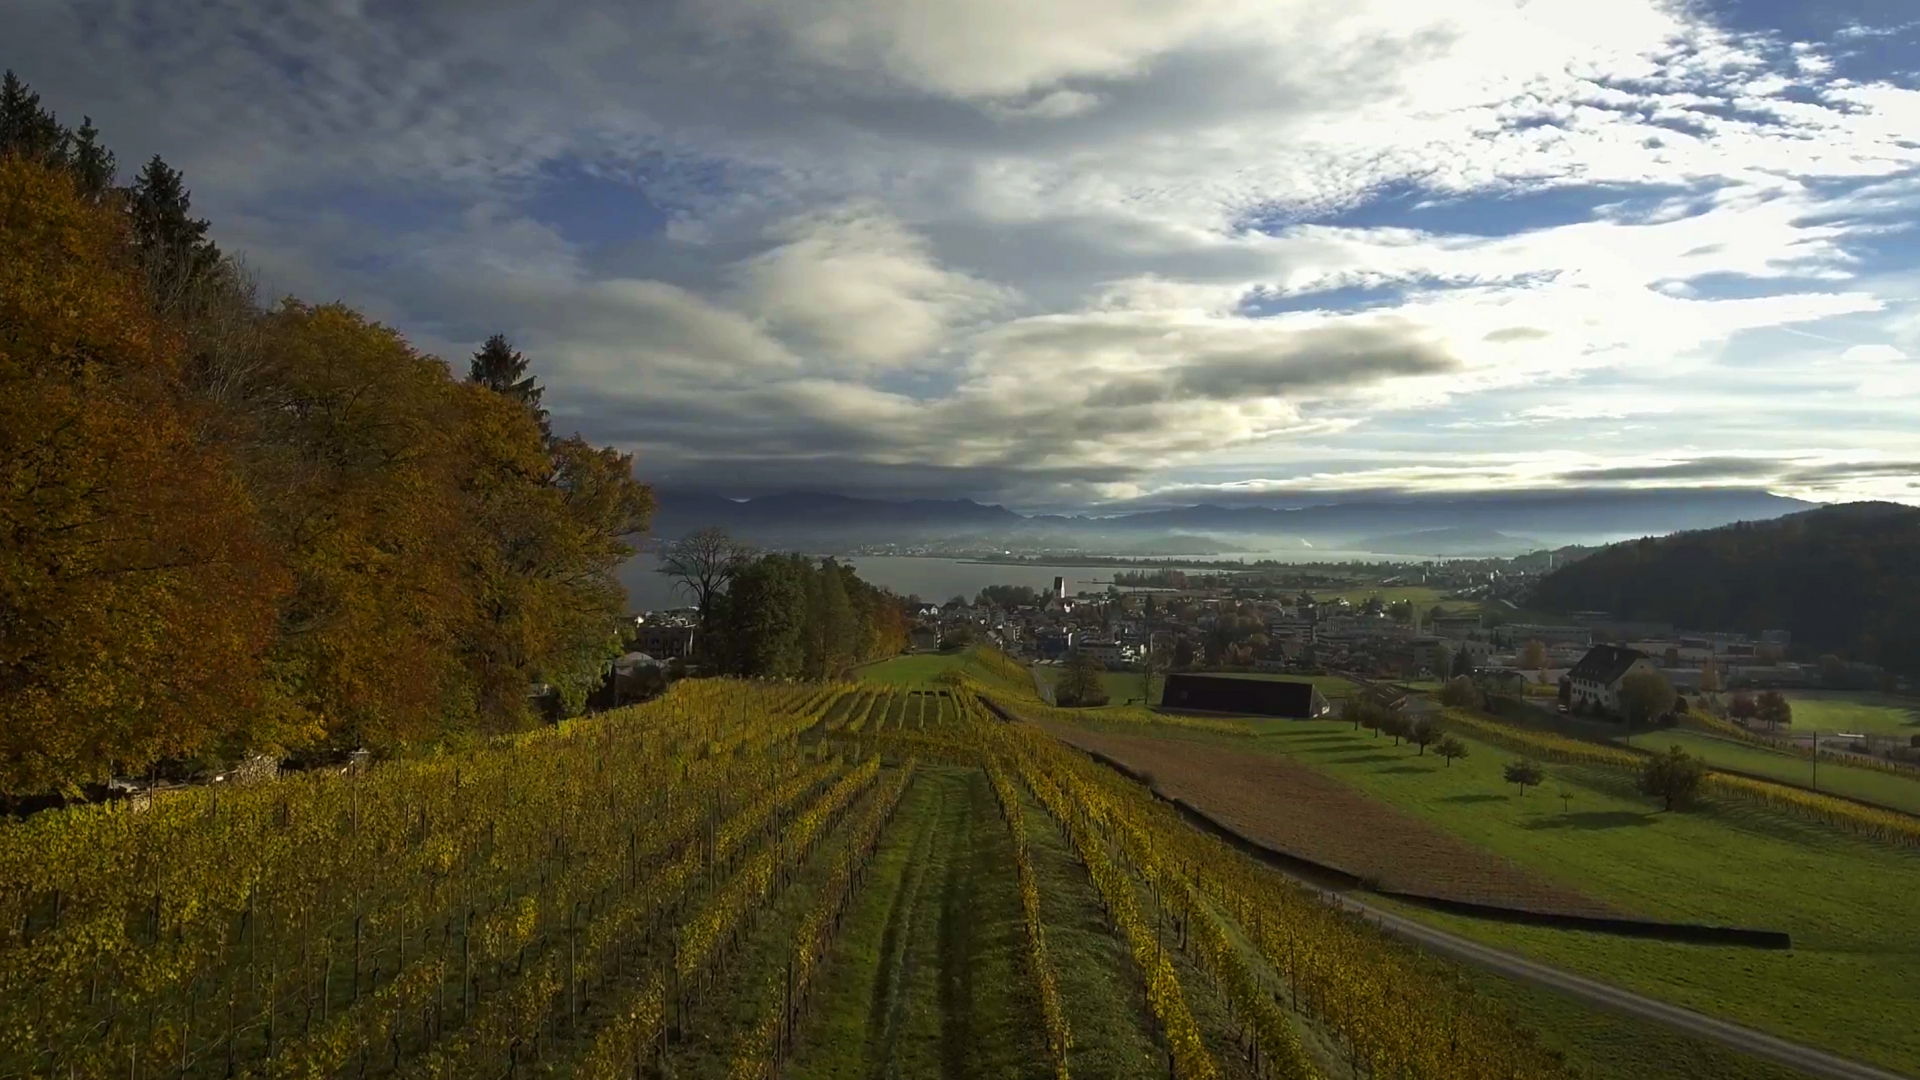 Oleowine Art in Switzerland, Europe | Wineries - Rated 0.8